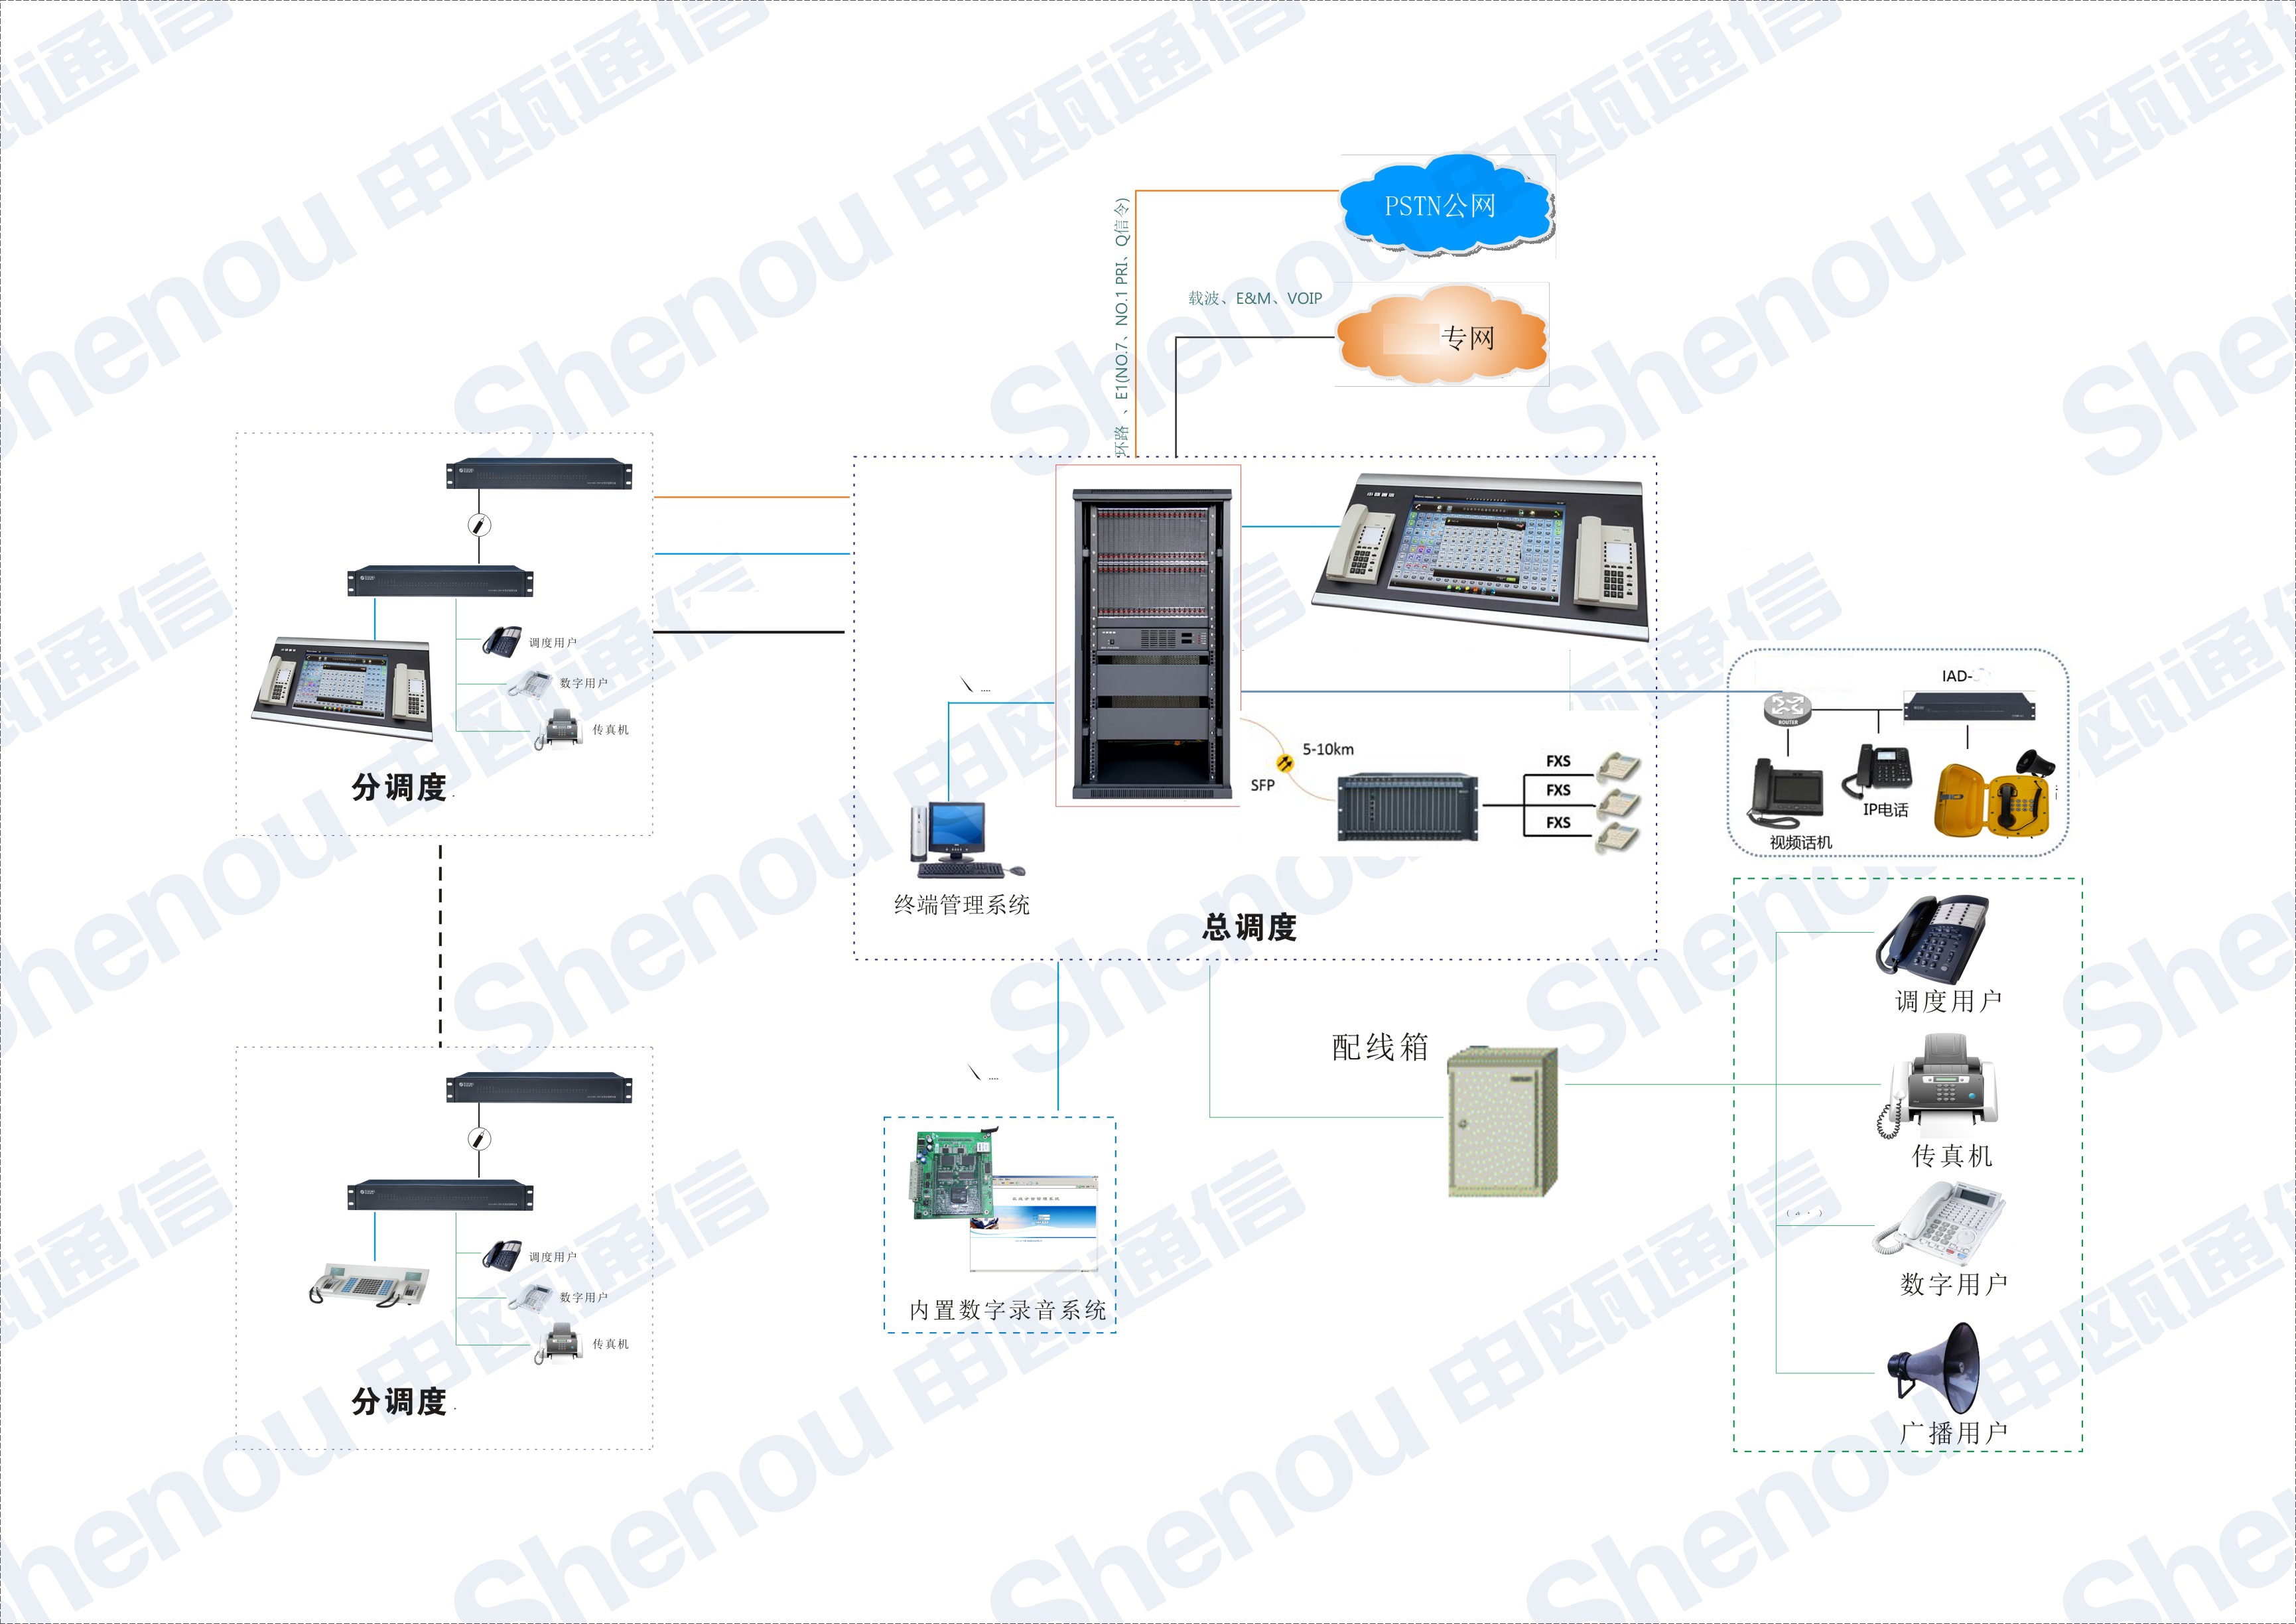 电力水电站电厂专网多级调度通信系统应用方案图